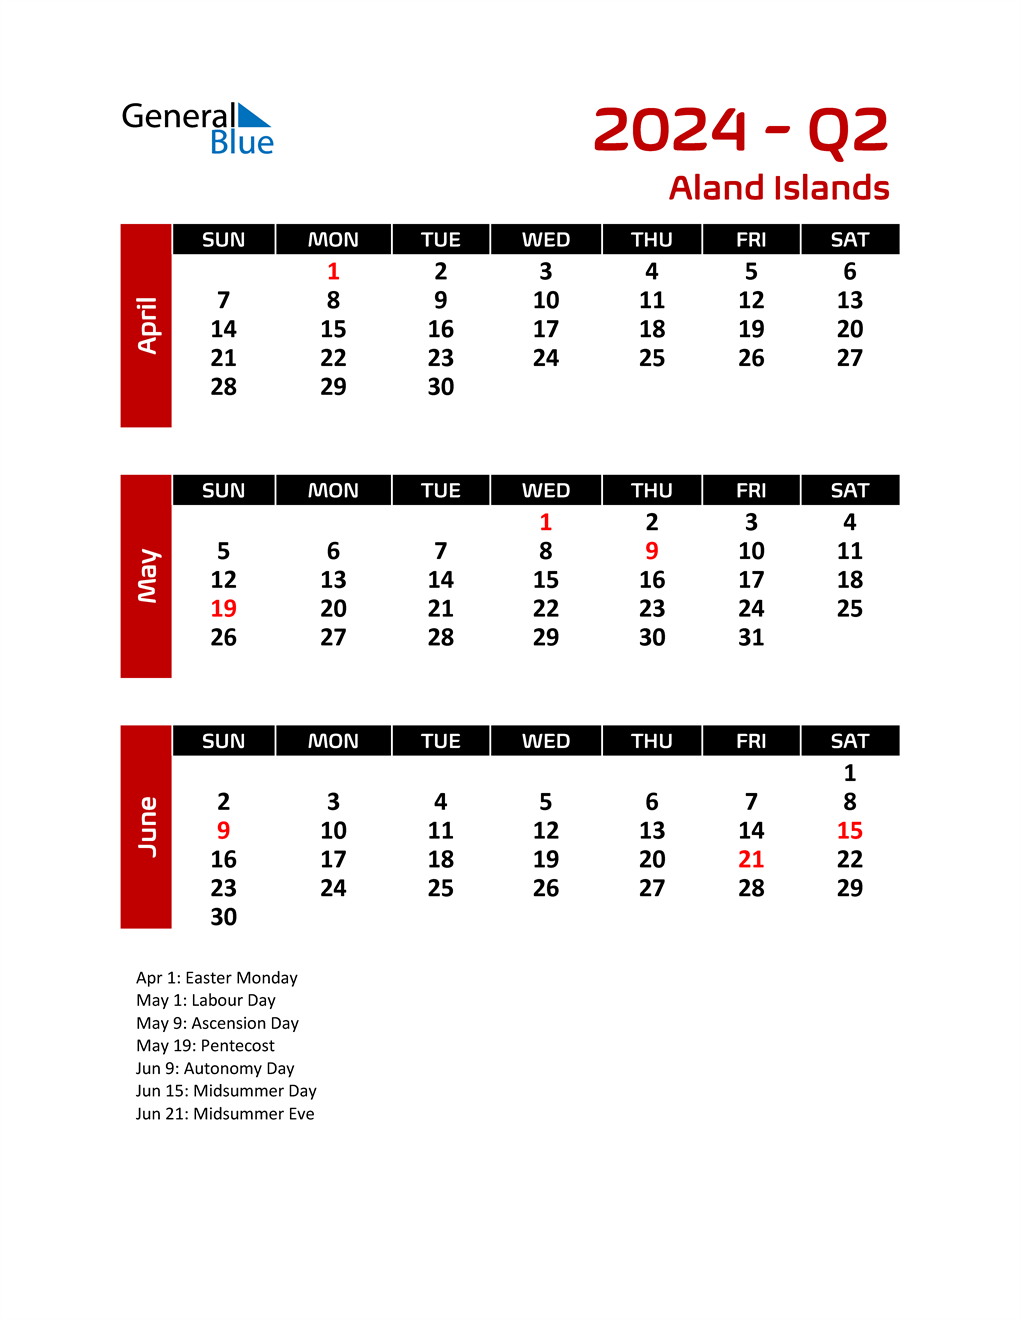 Q2 2024 Quarterly Calendar with Aland Islands Holidays